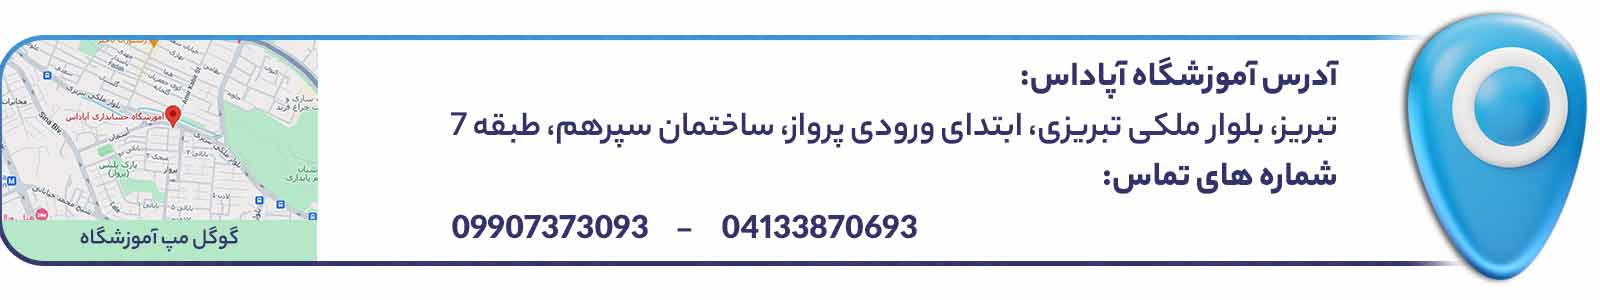 آدرس و اطلاعات تماس آموزشگاه حسابداری در تبریز آپاداس